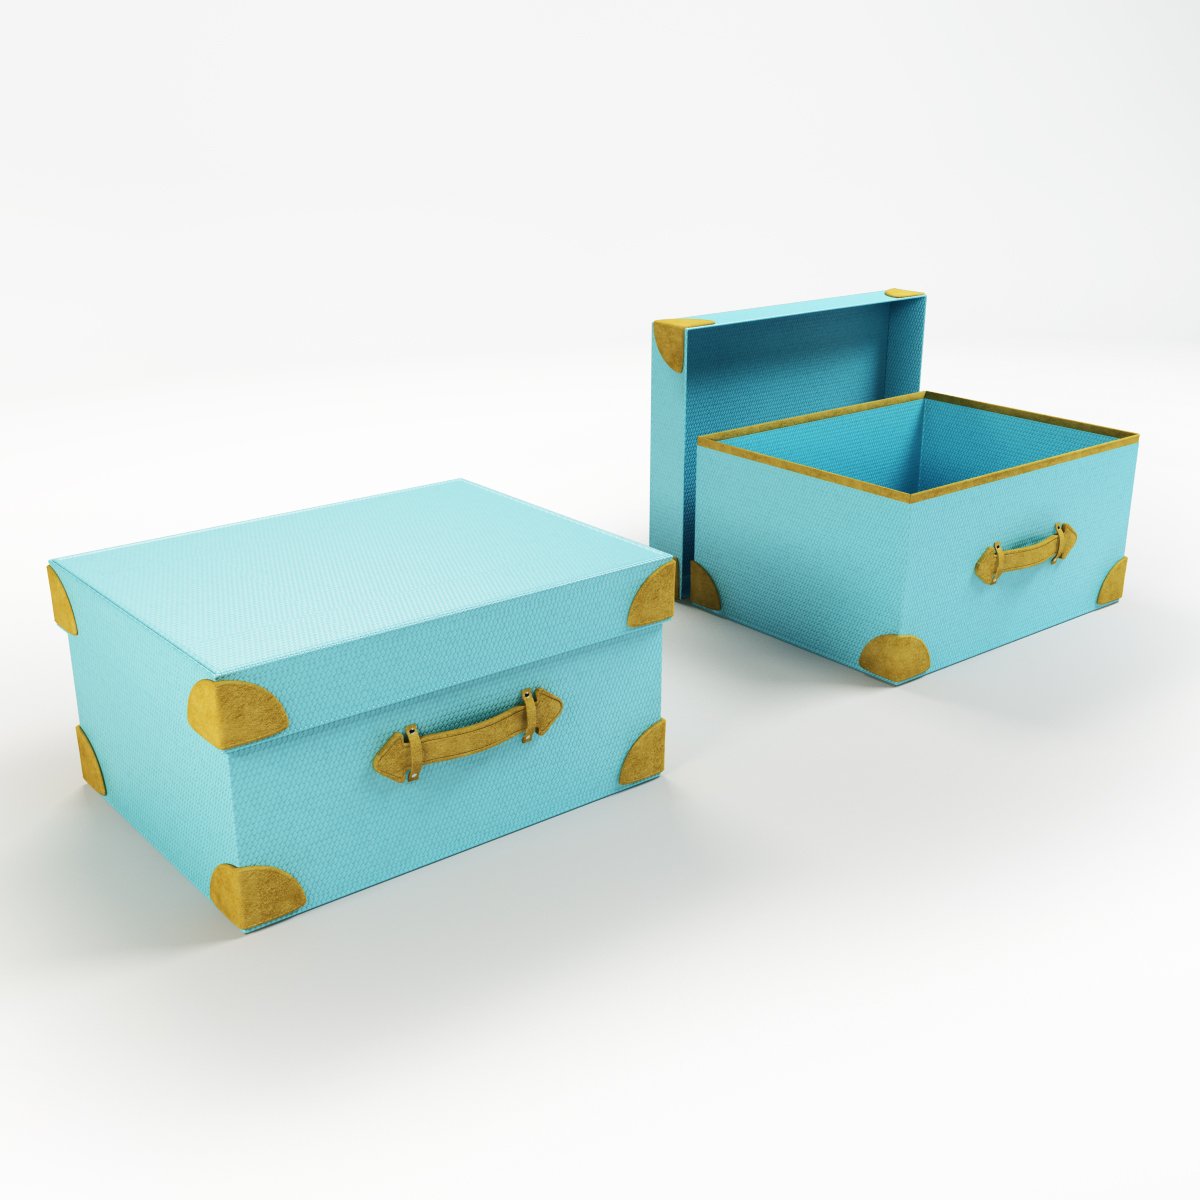 Модели коробок. Коробка для хранения 3д модель. 3d Box Toy. Toy Box-r.